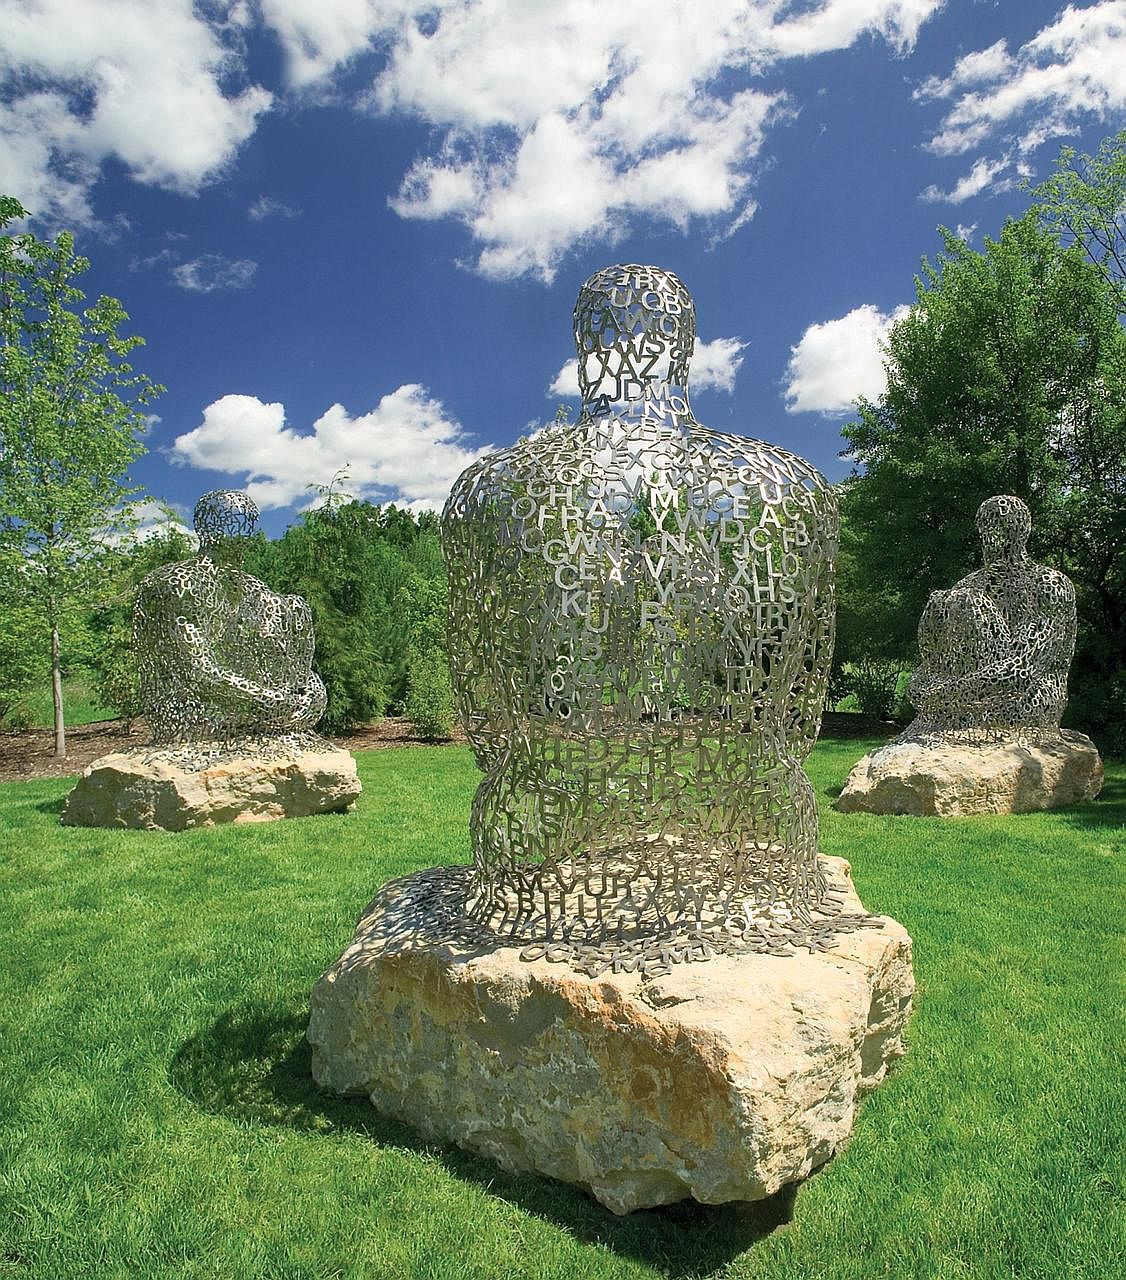 Frederik Meijer Gardens & Sculpture Park, Michigan, The United States